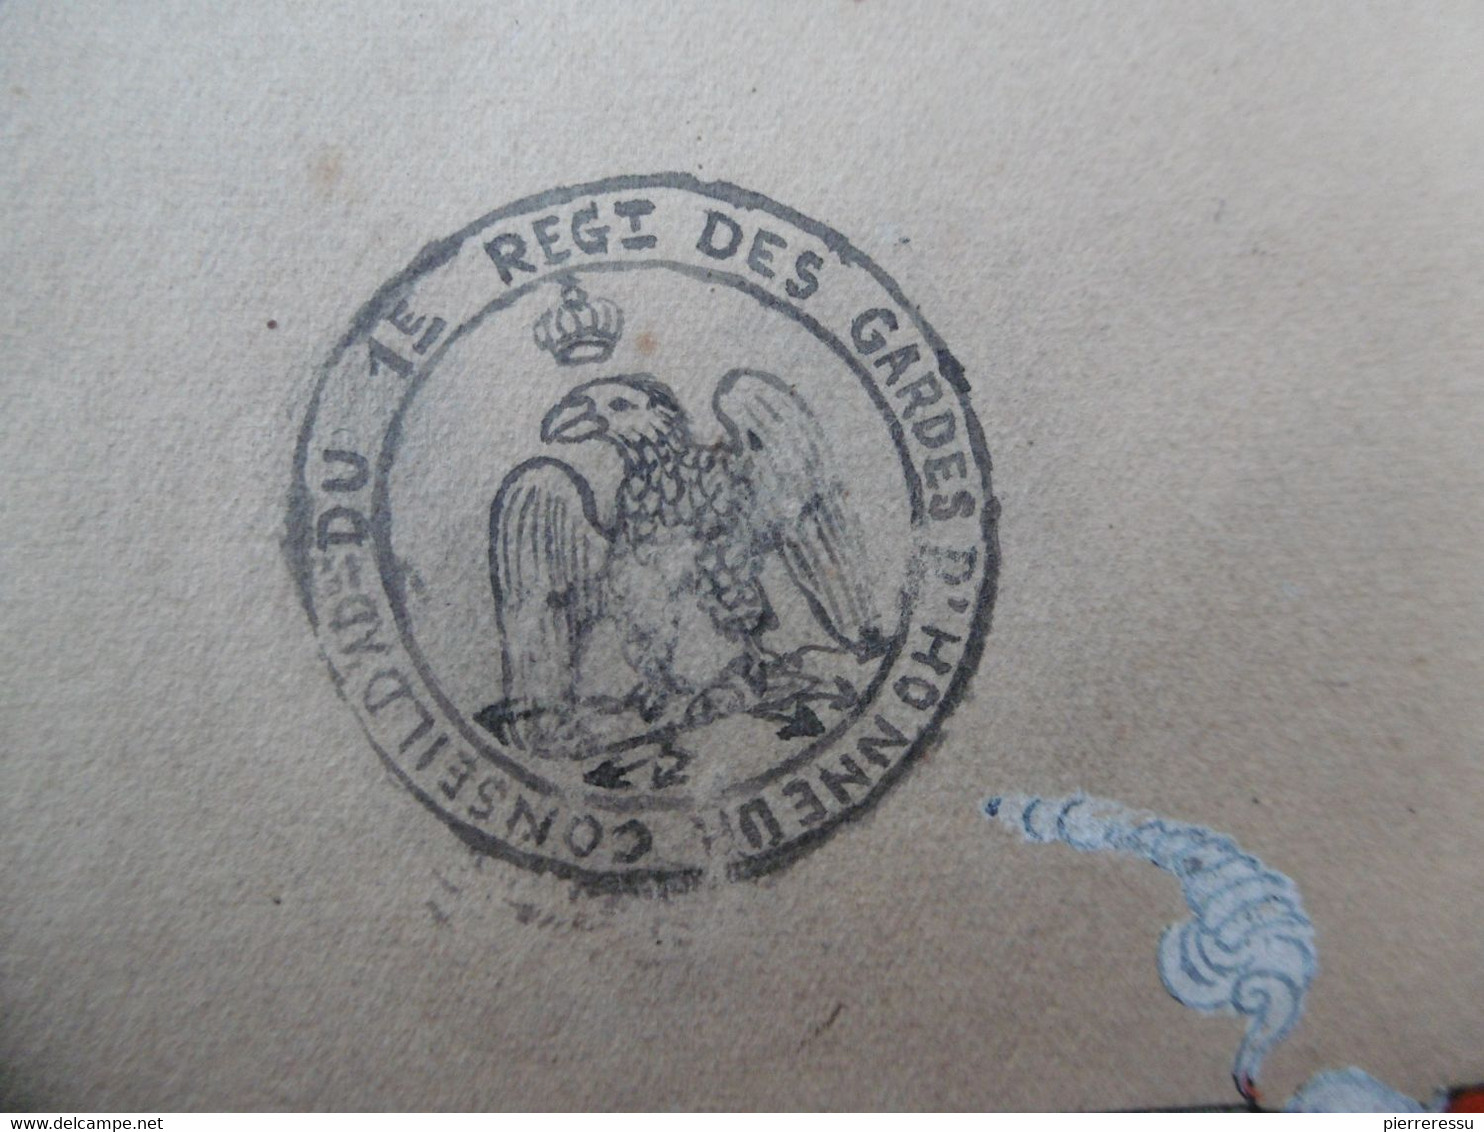 GARDE IMPERIALE GARDE D HONNEUR 1er REGIMENT DESSIN A LA GOUACHE 1813 BONAPARTE & JOSEPHINE - Documents